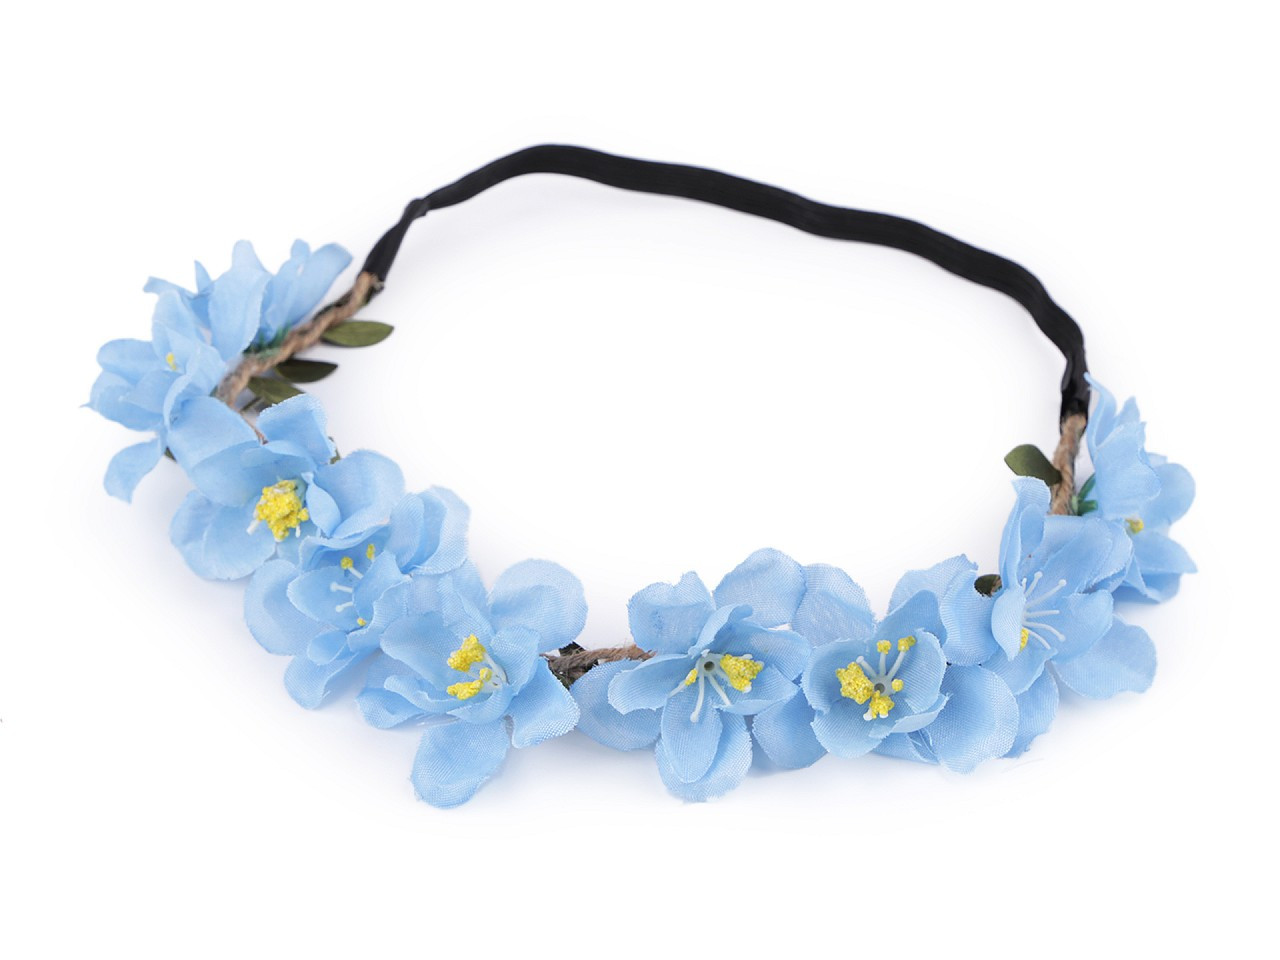 Pružná čelenka do vlasů s květy, barva 2 modrá světlá